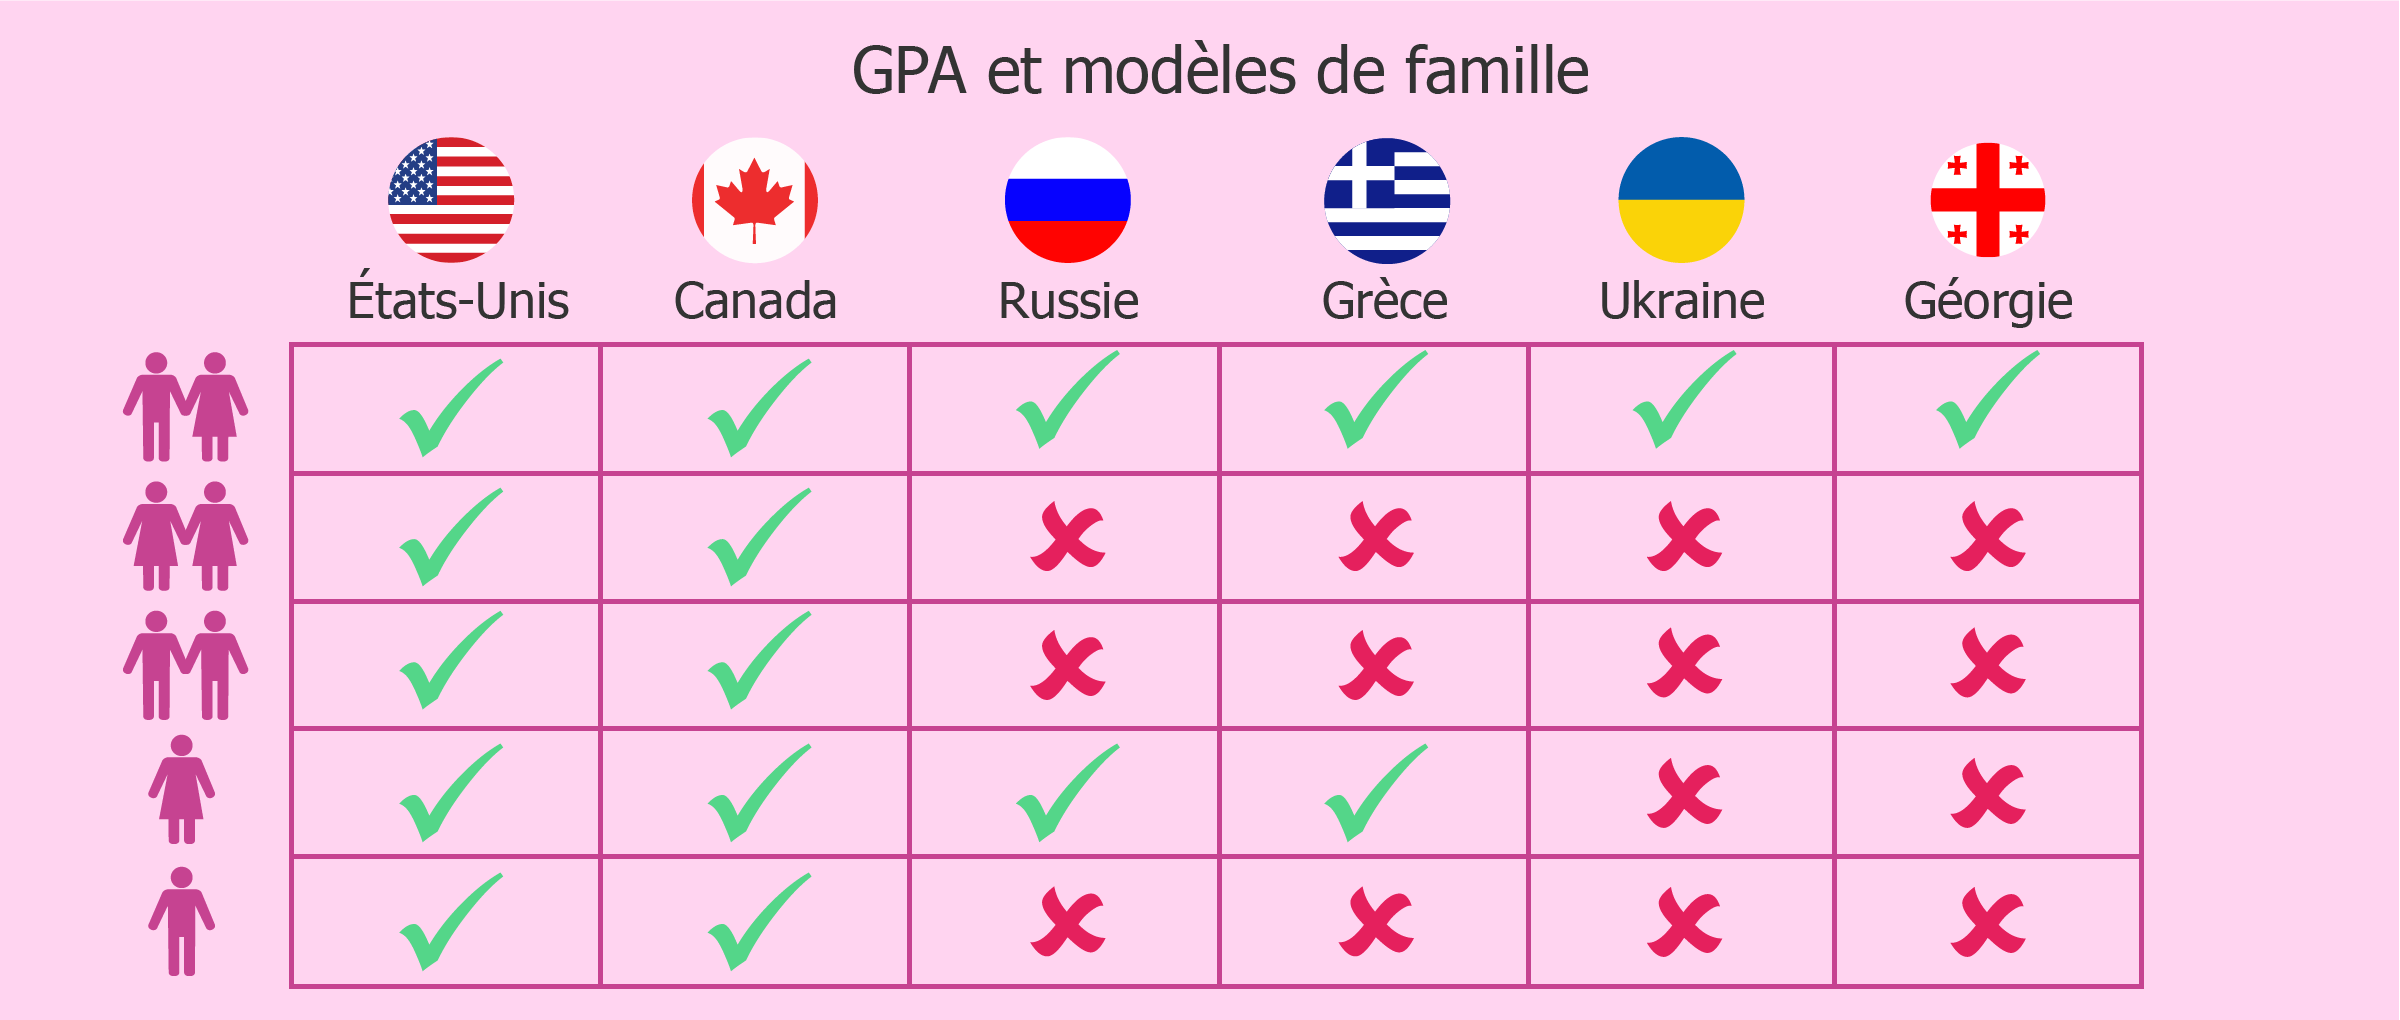 Choisir un pays pour une GPA selon le modèle familial